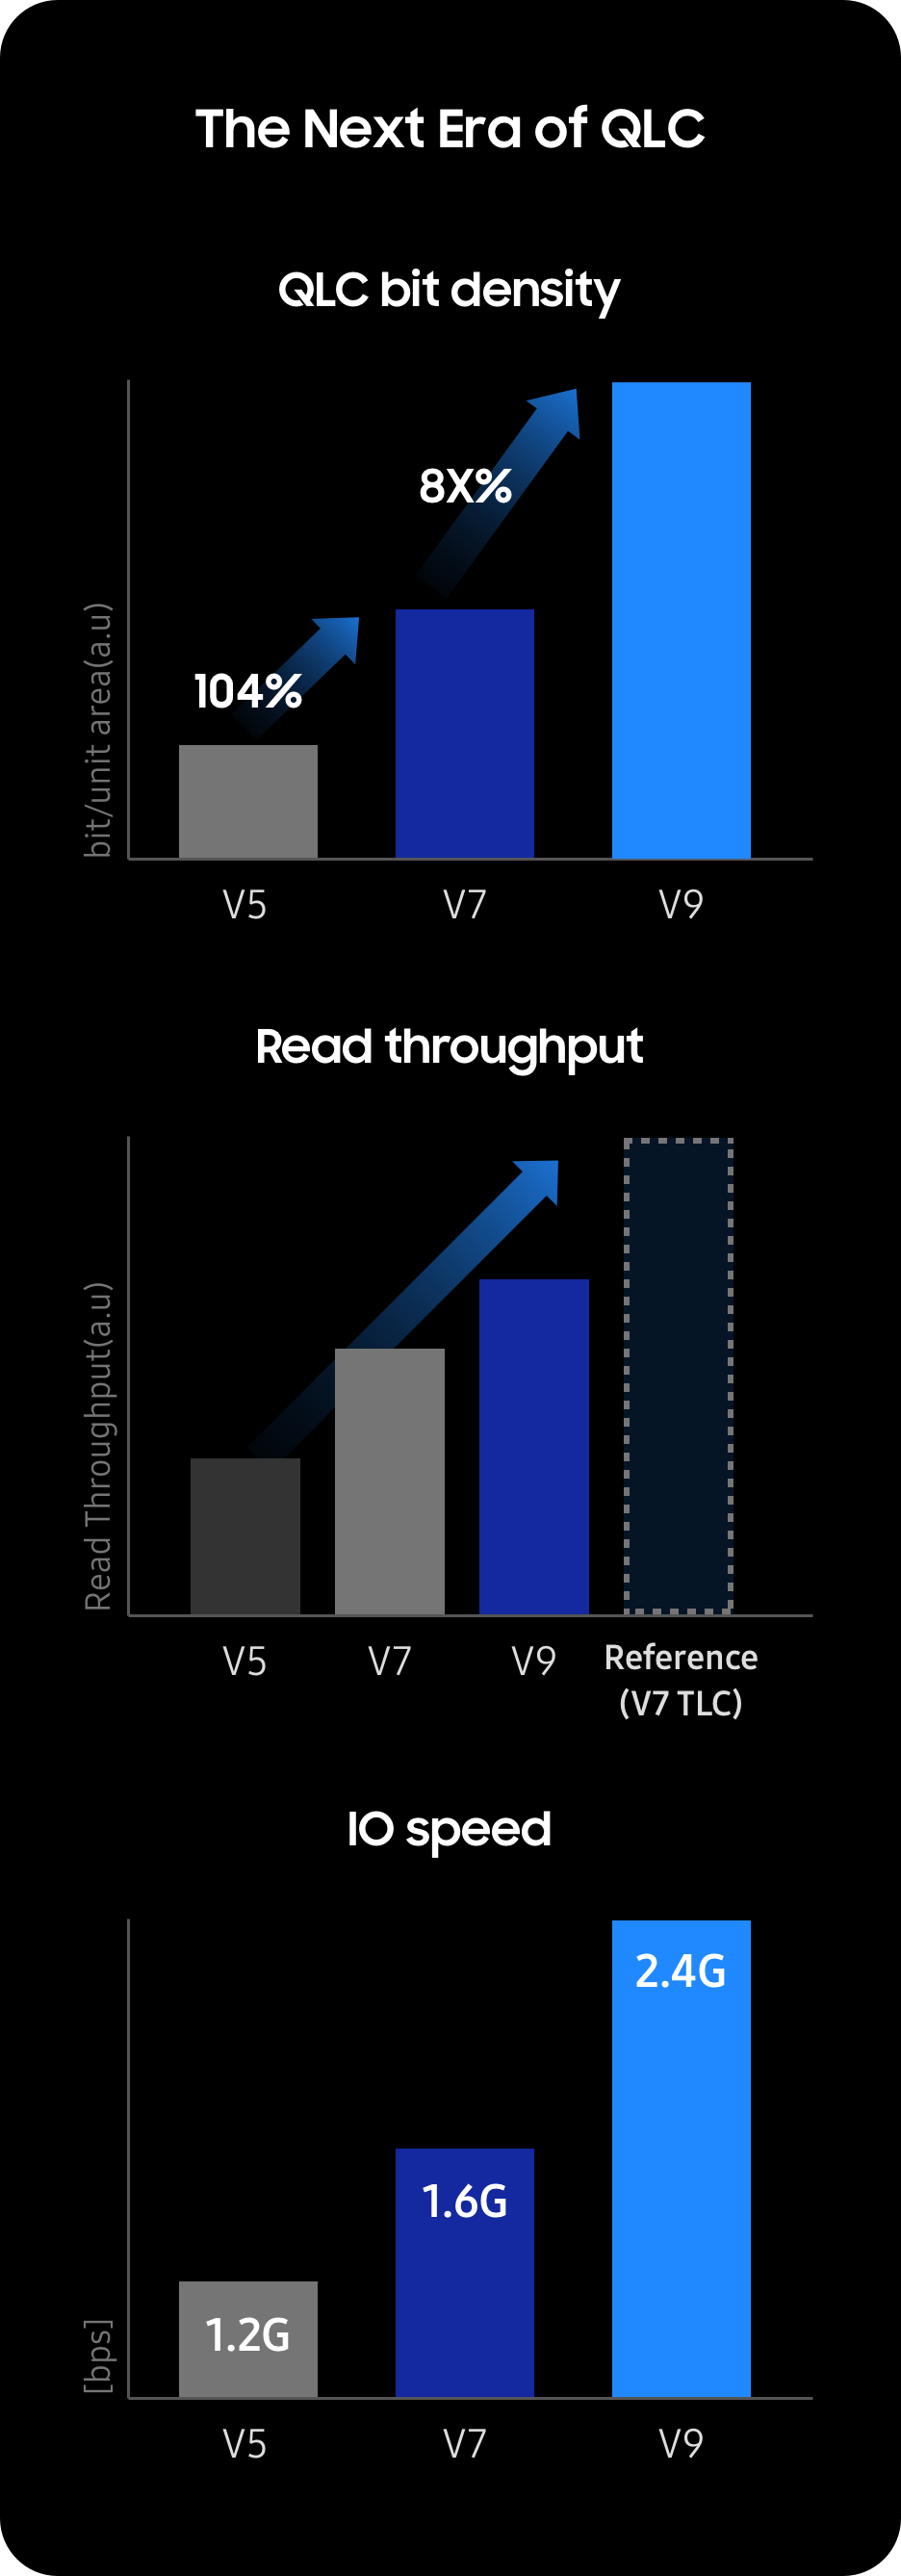 삼성전자 V-NAND QLC 비트 밀도, 읽기 처리량, IO 속도 성능별 개선 추이 그래프